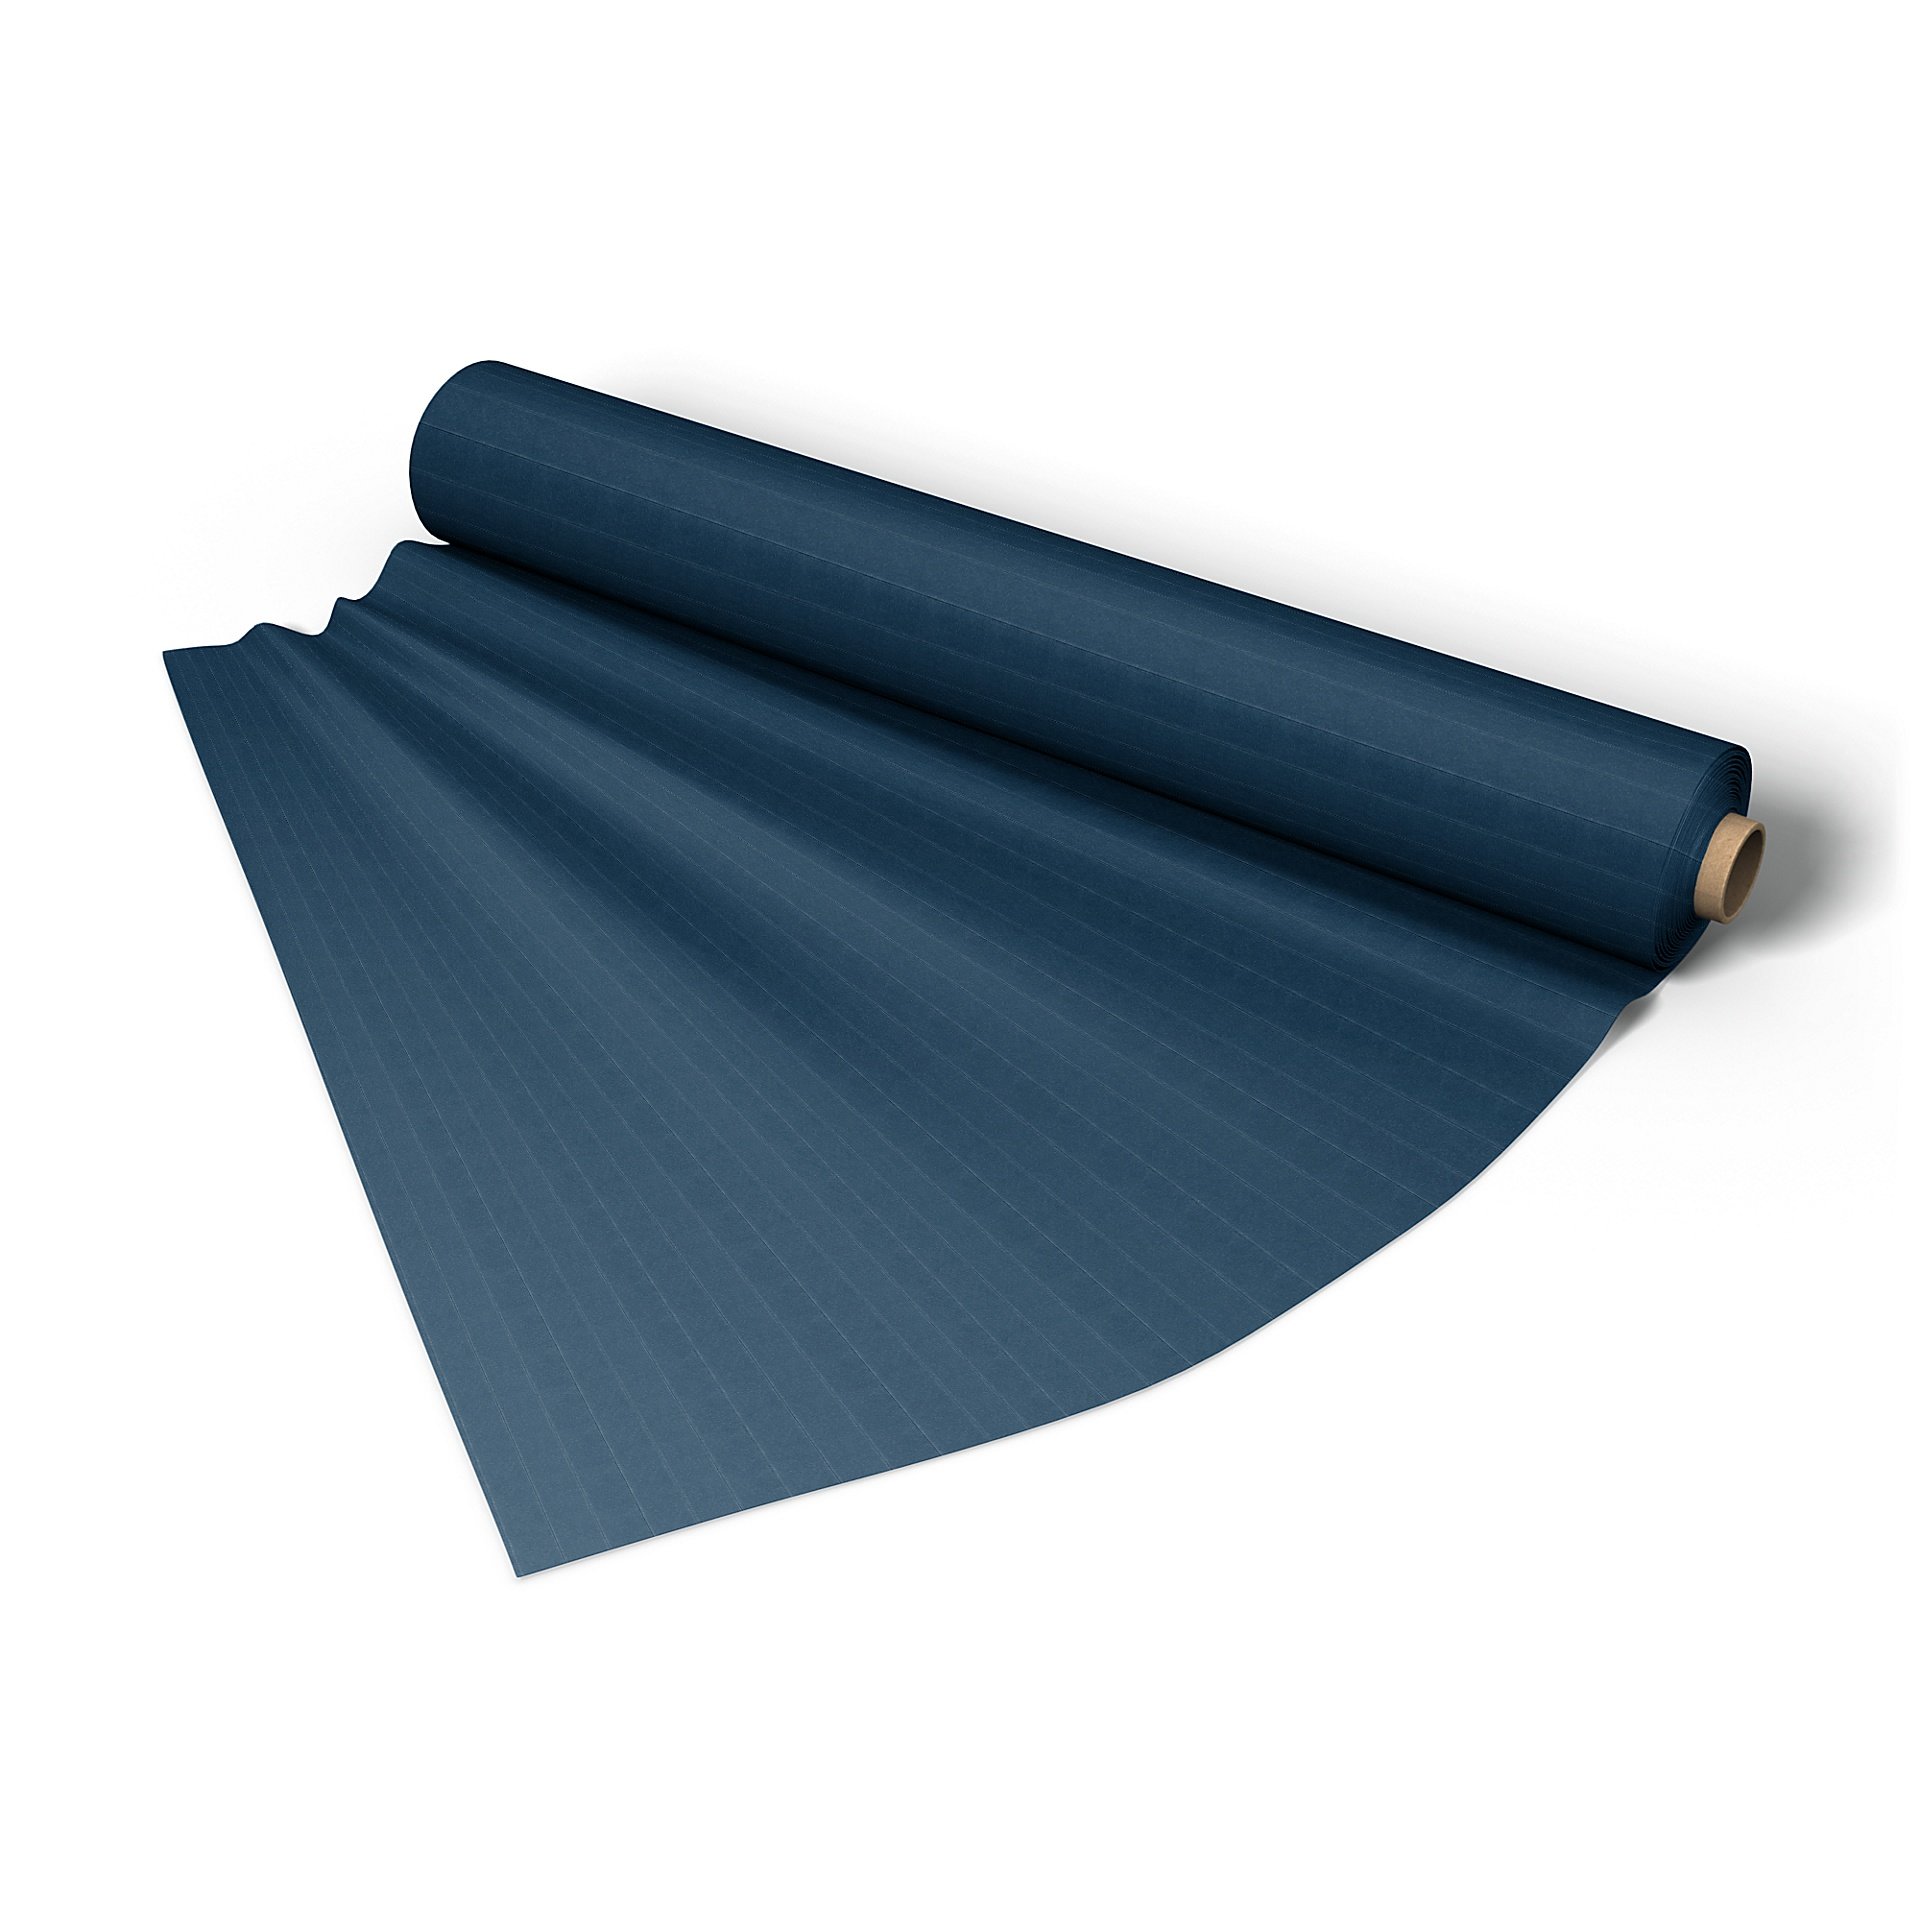 Fabric per metre, Denim Blue, Velvet - Bemz